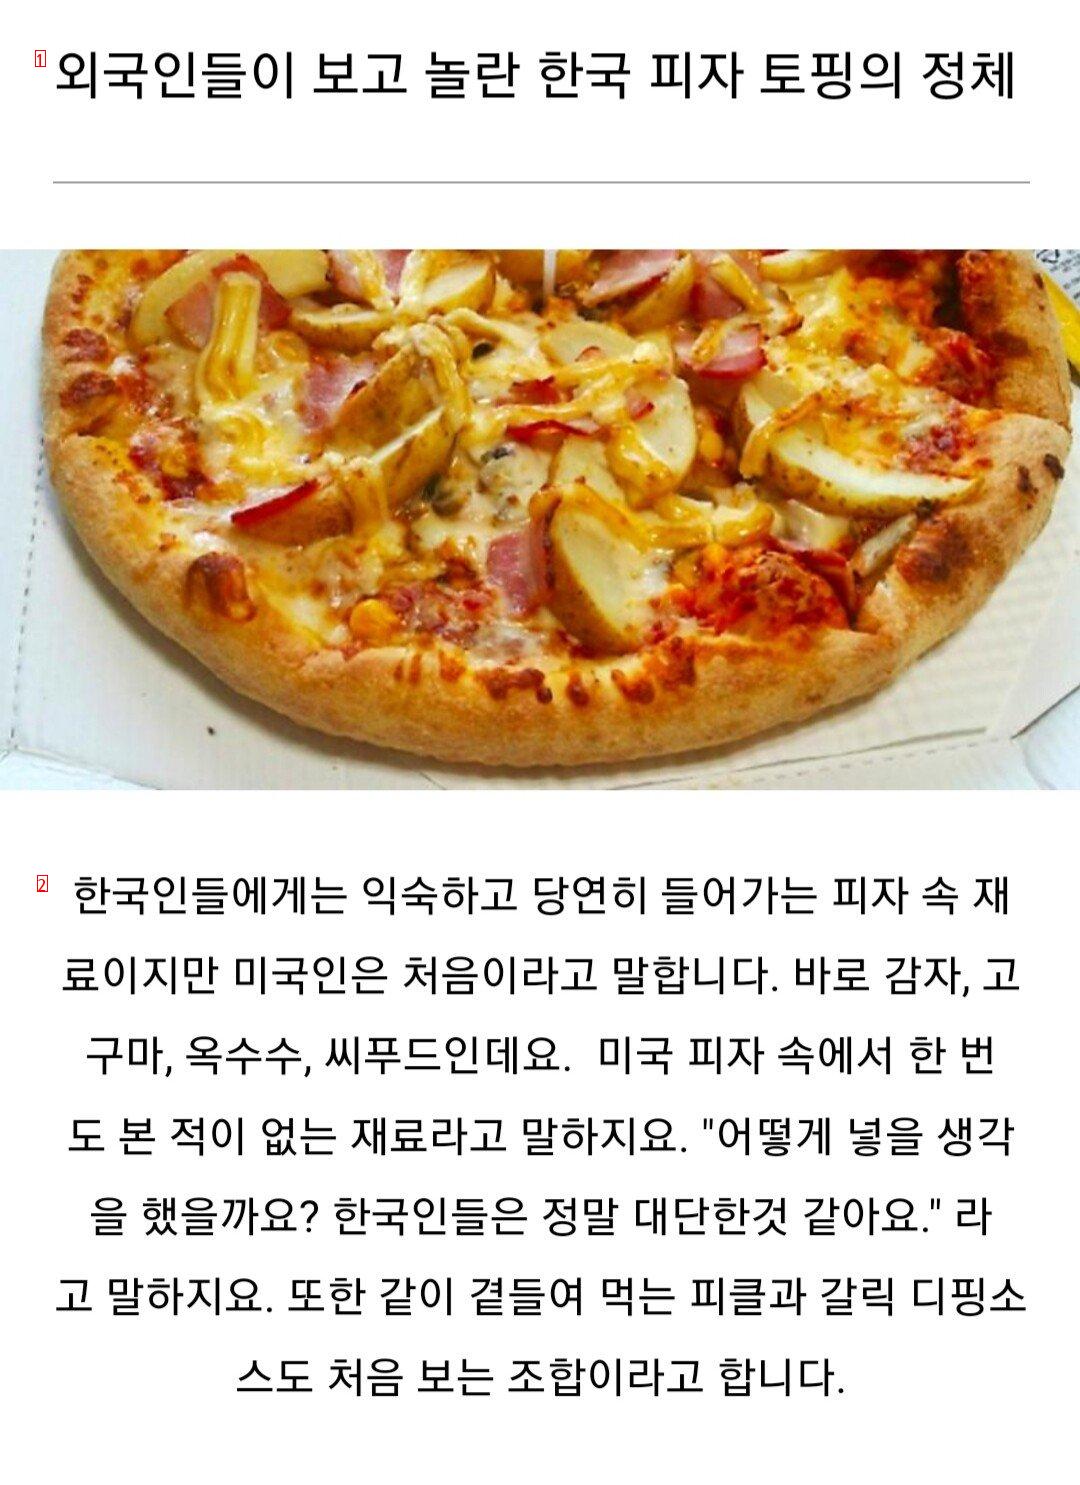 外国人が韓国のピザを見て驚くという点